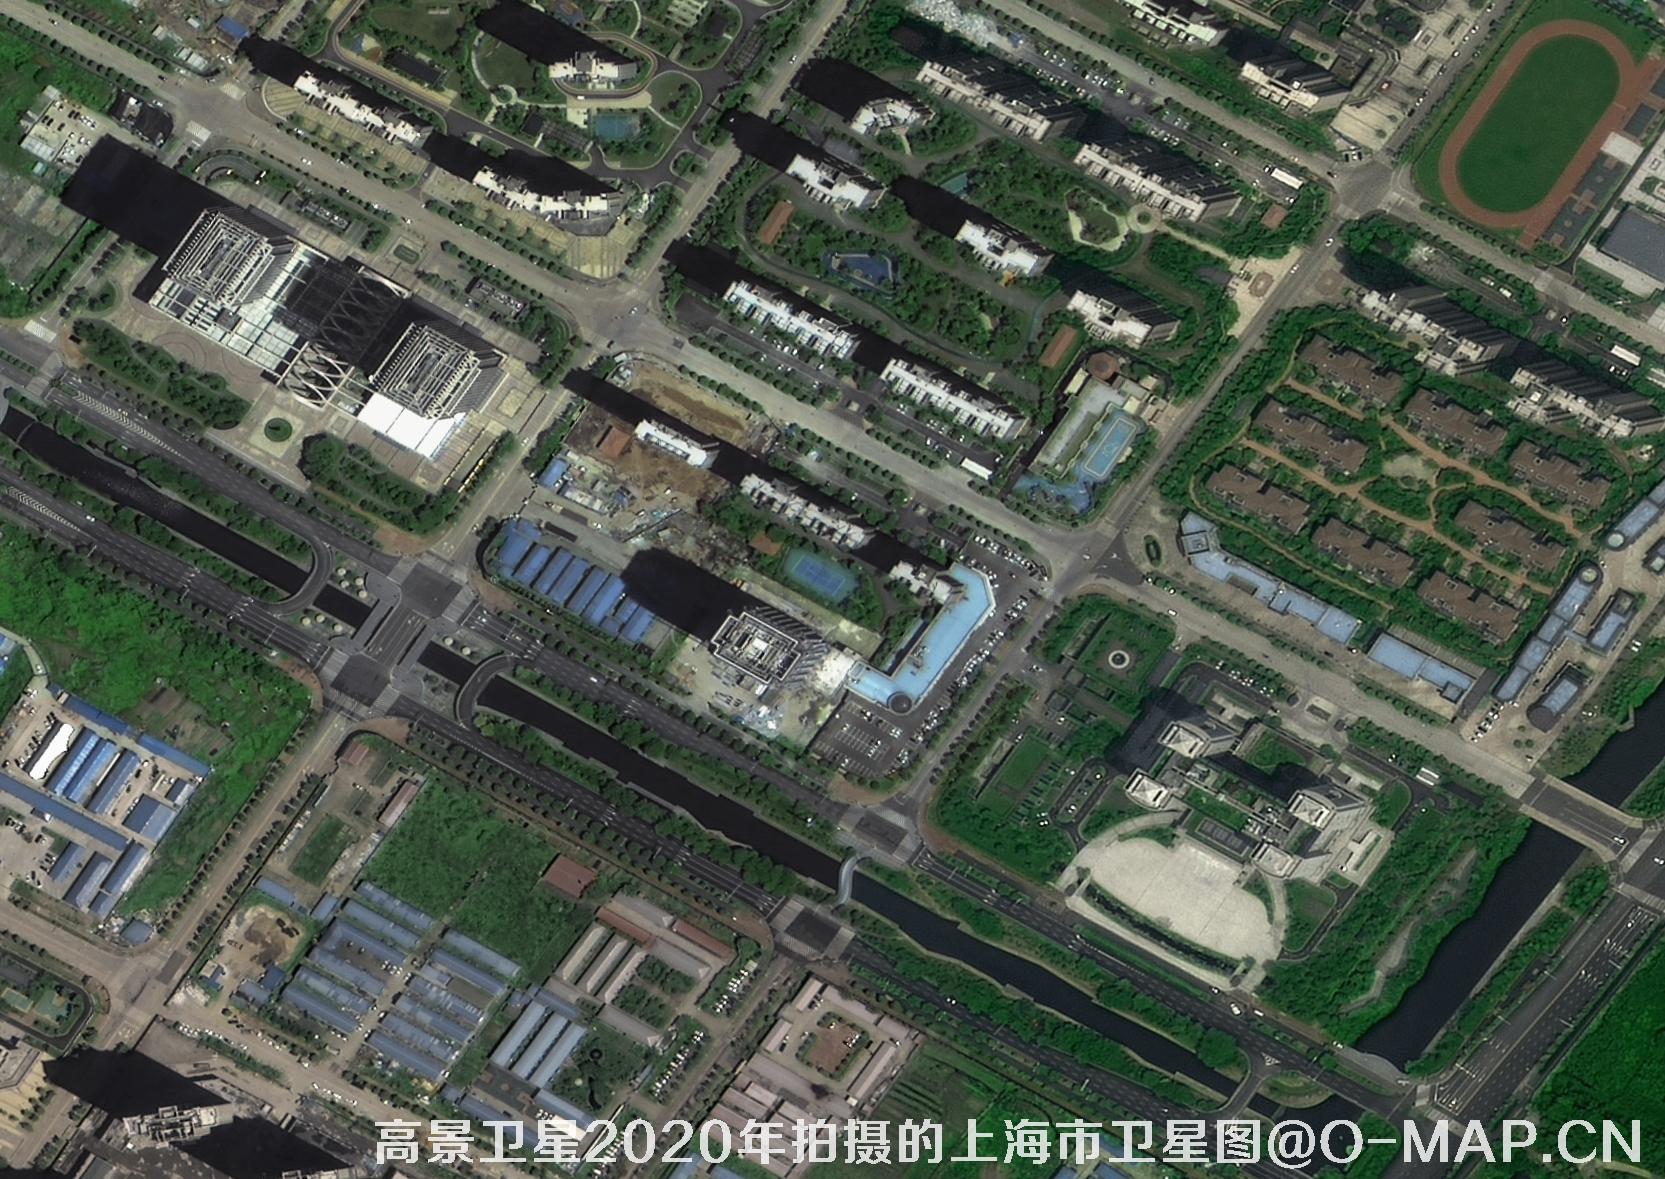 国产0.5米分辨率卫星拍摄的遥感影像图